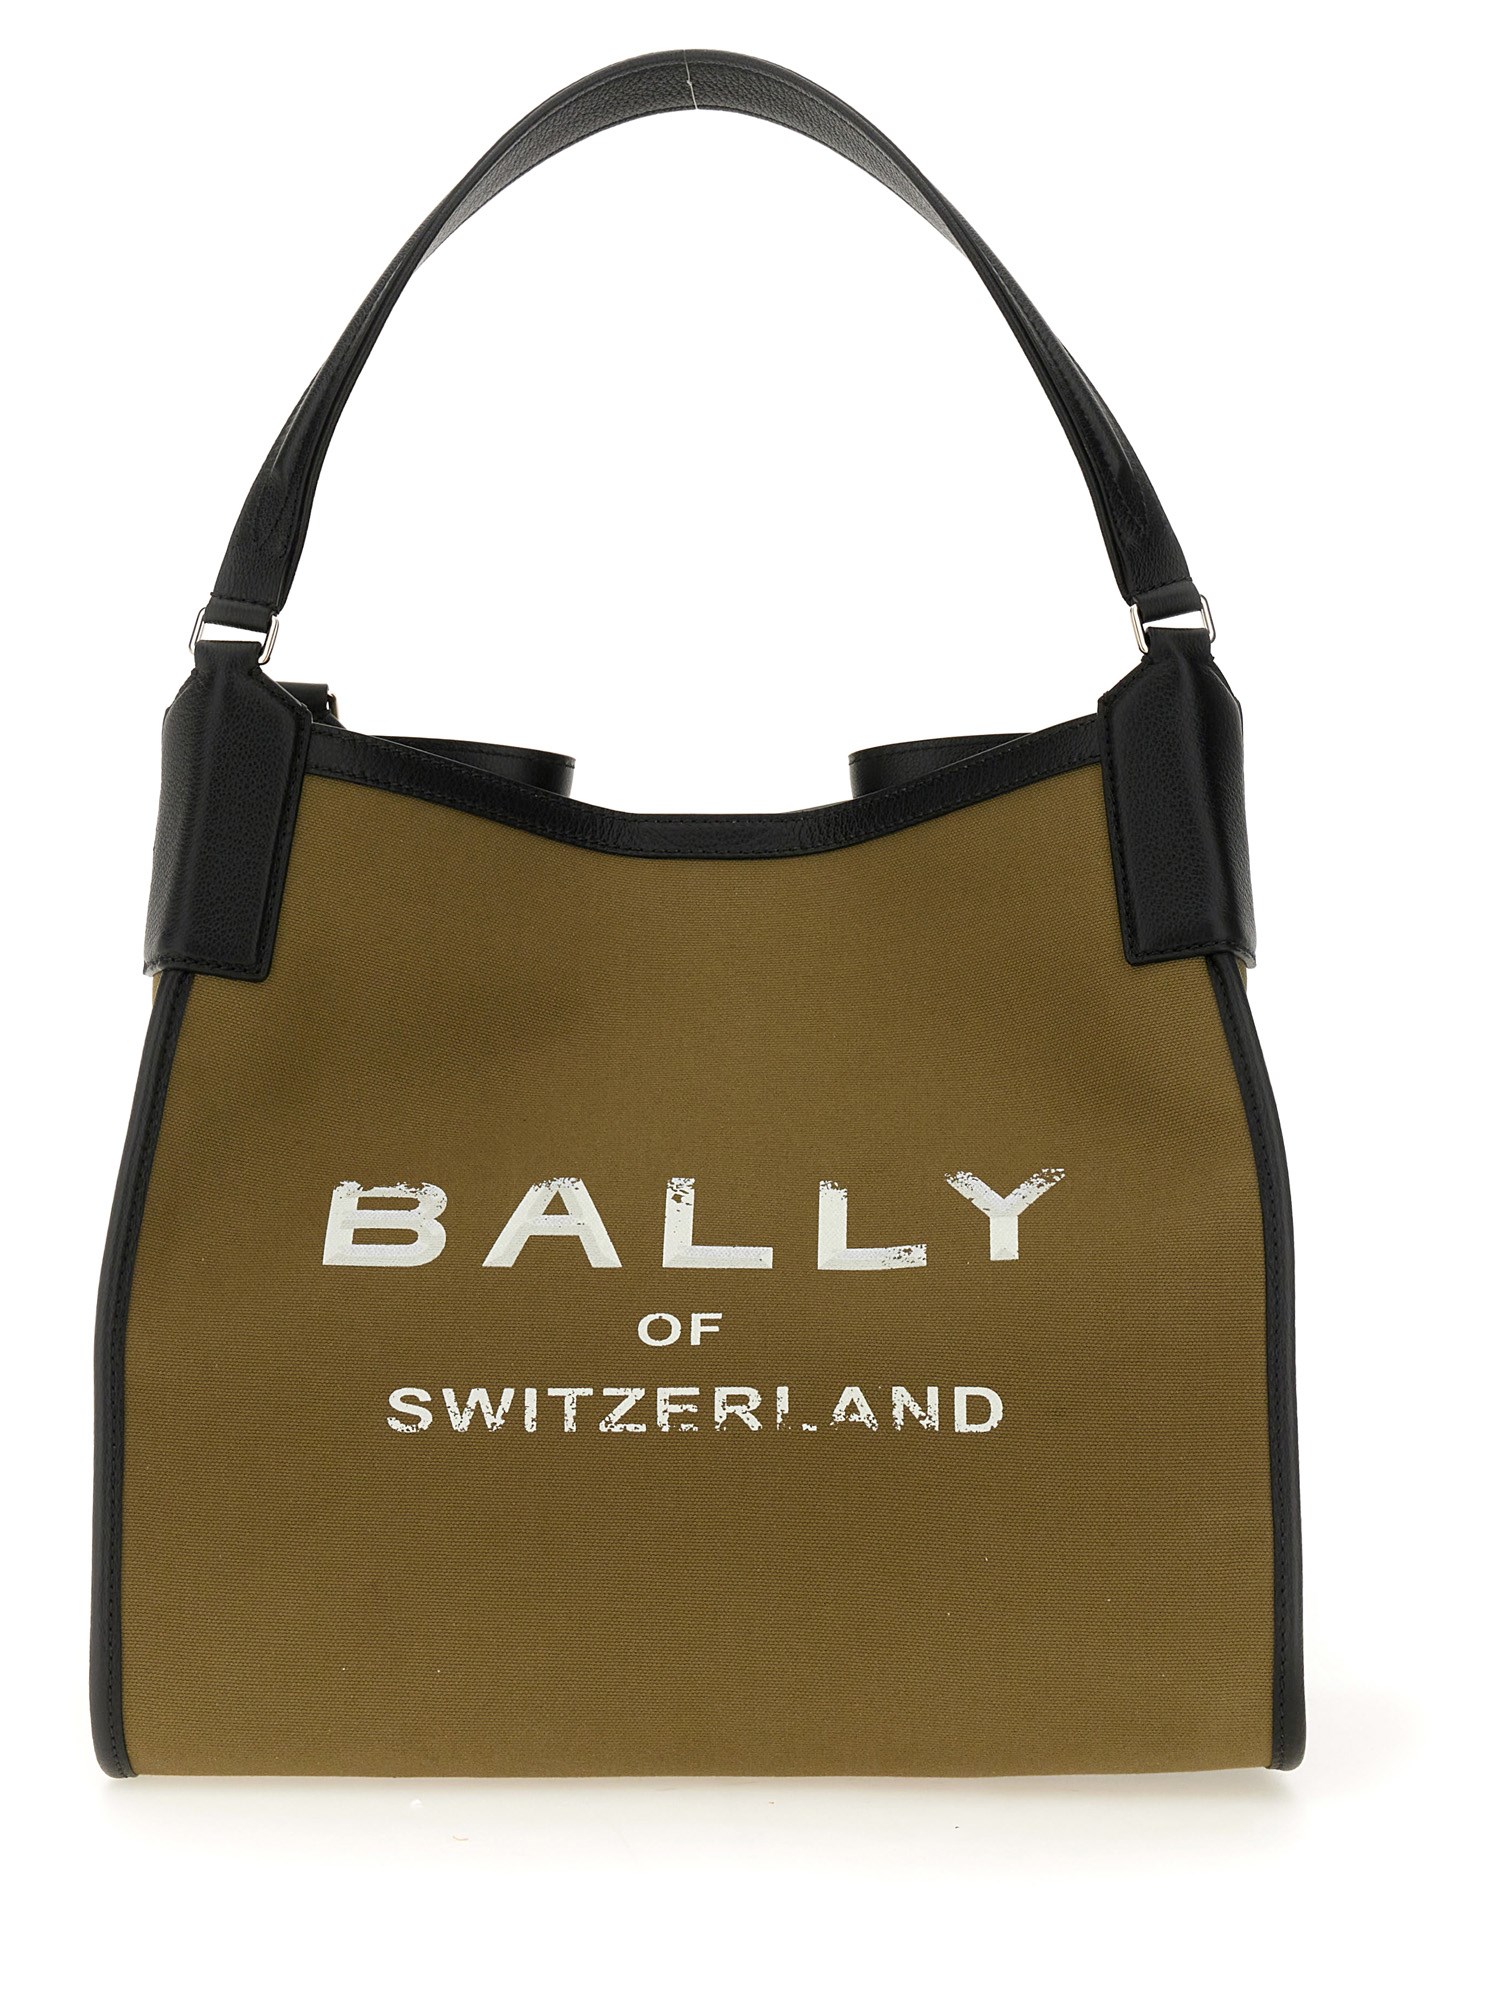 bally shopping bag 